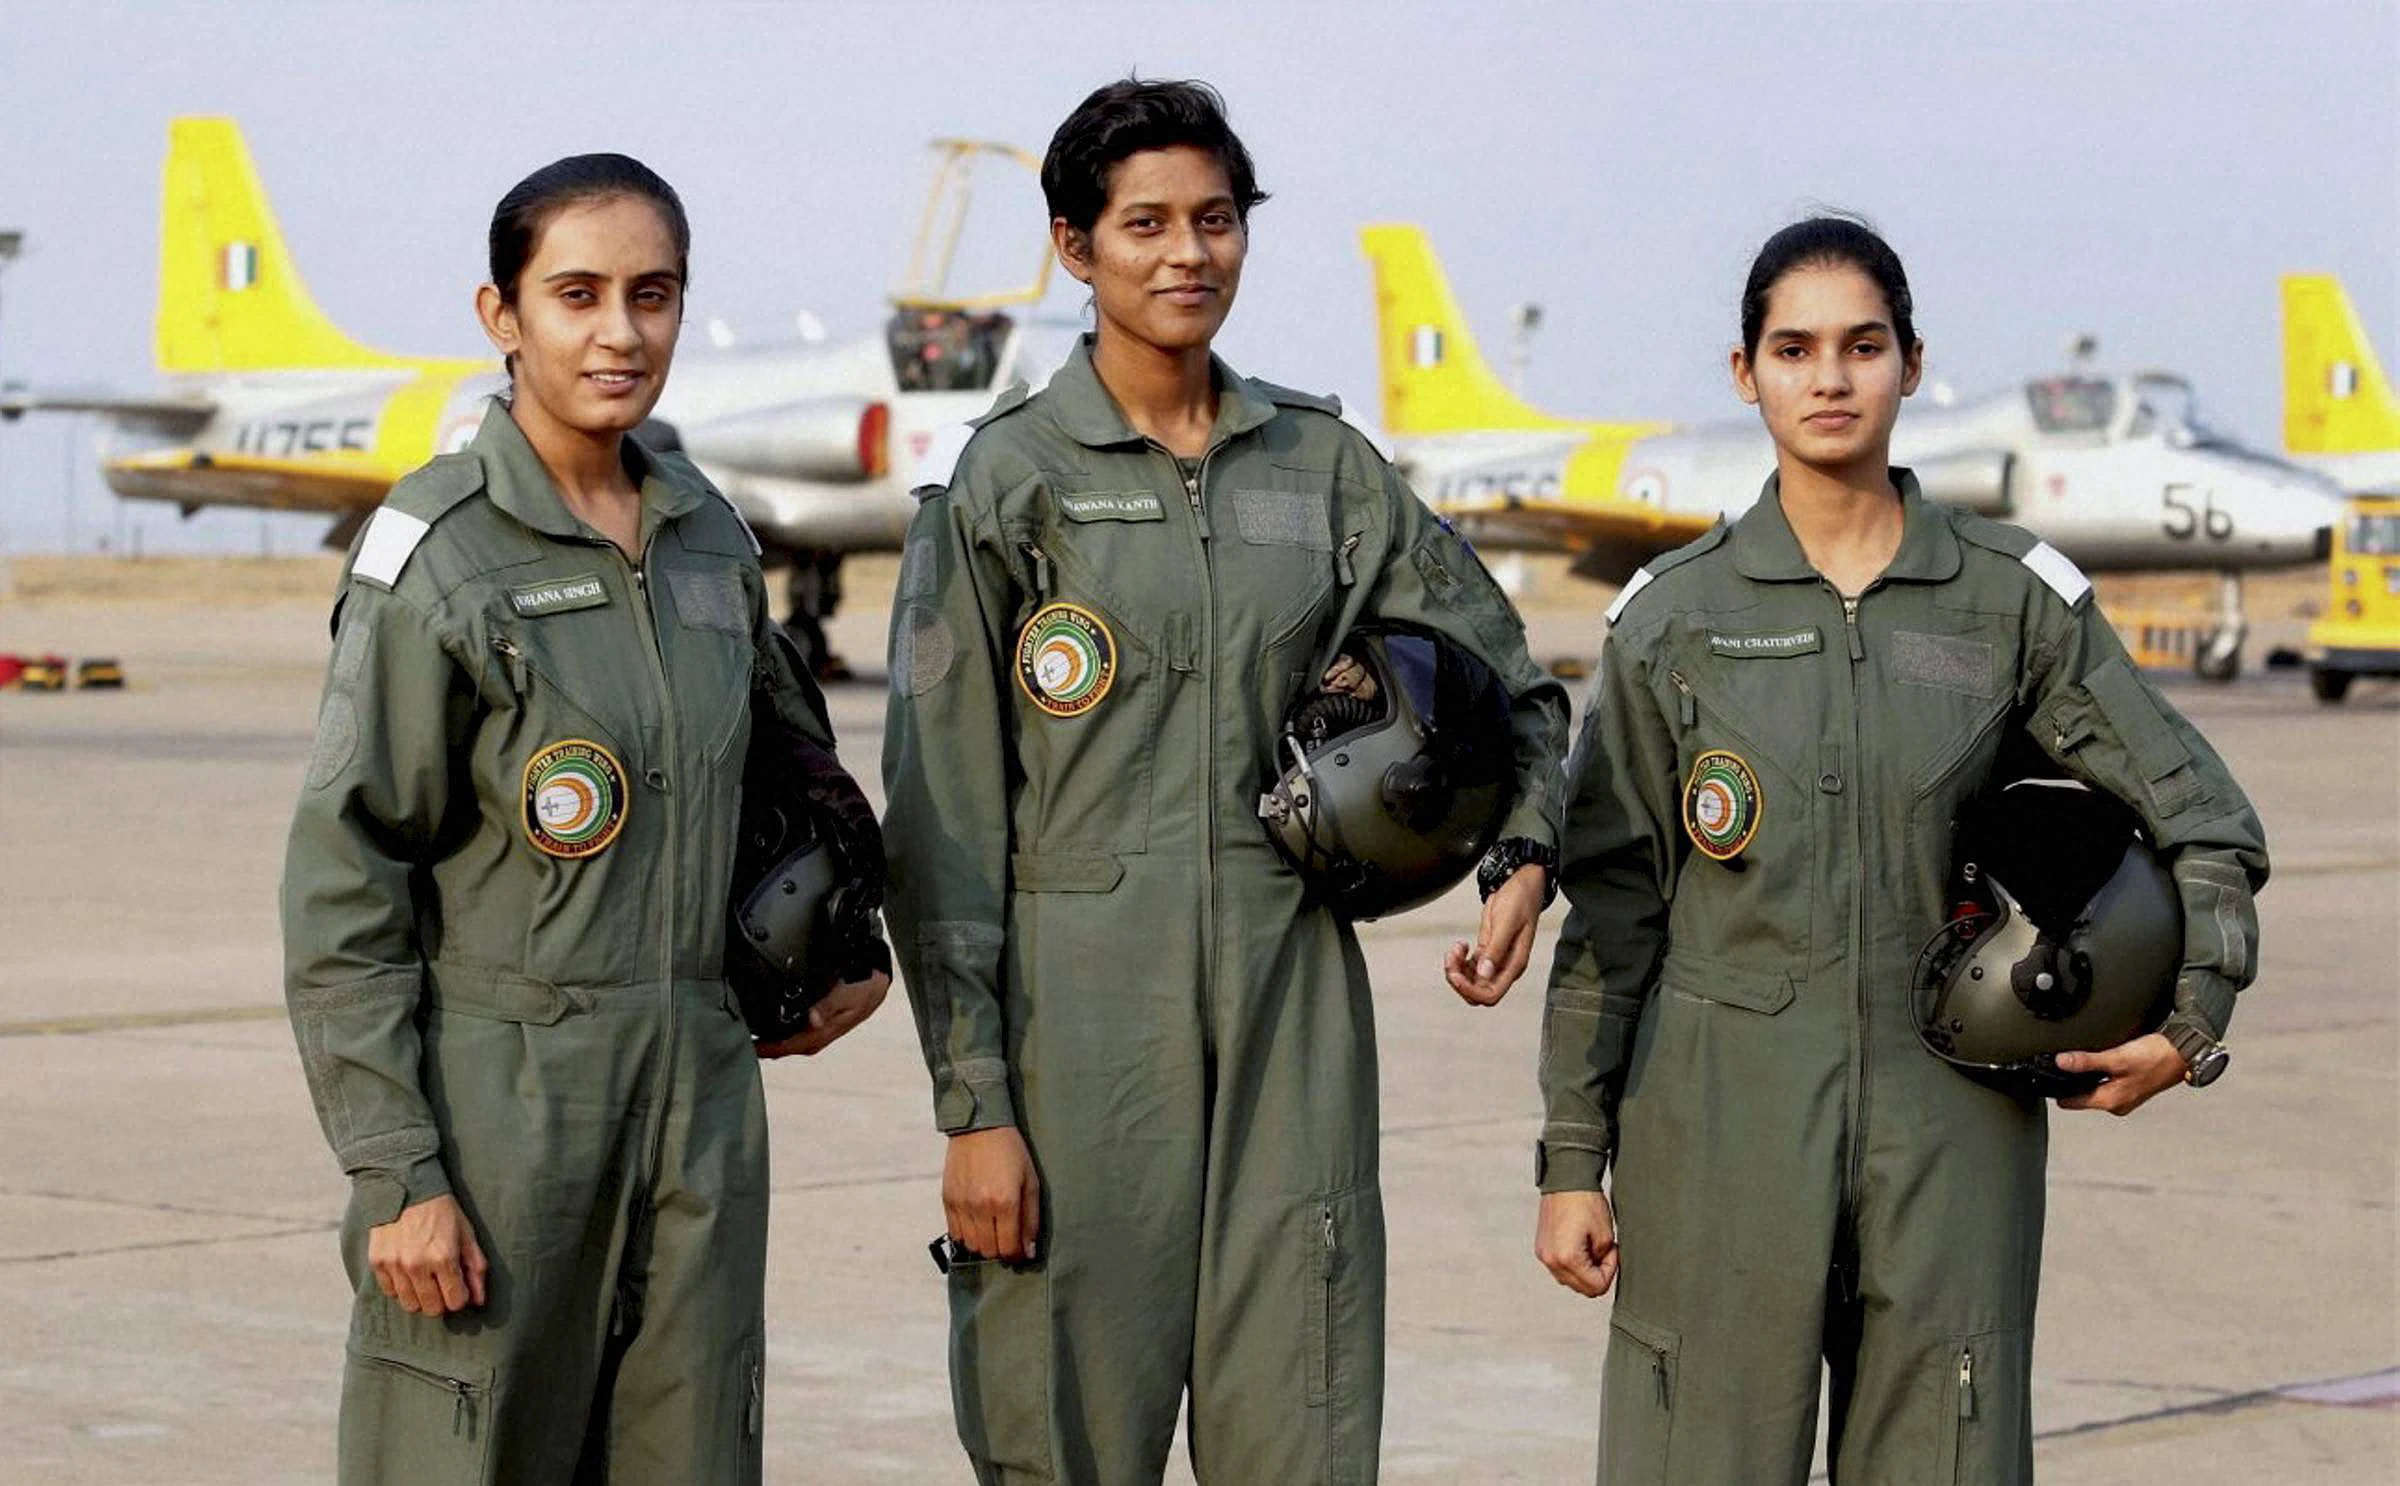 Veer guardian 2023: भारतीय वायु सेना की महिला फाइटर पायलट पहली बार देश के बाहर गरजेगी, लेंगी युद्धाभ्यास में भाग 